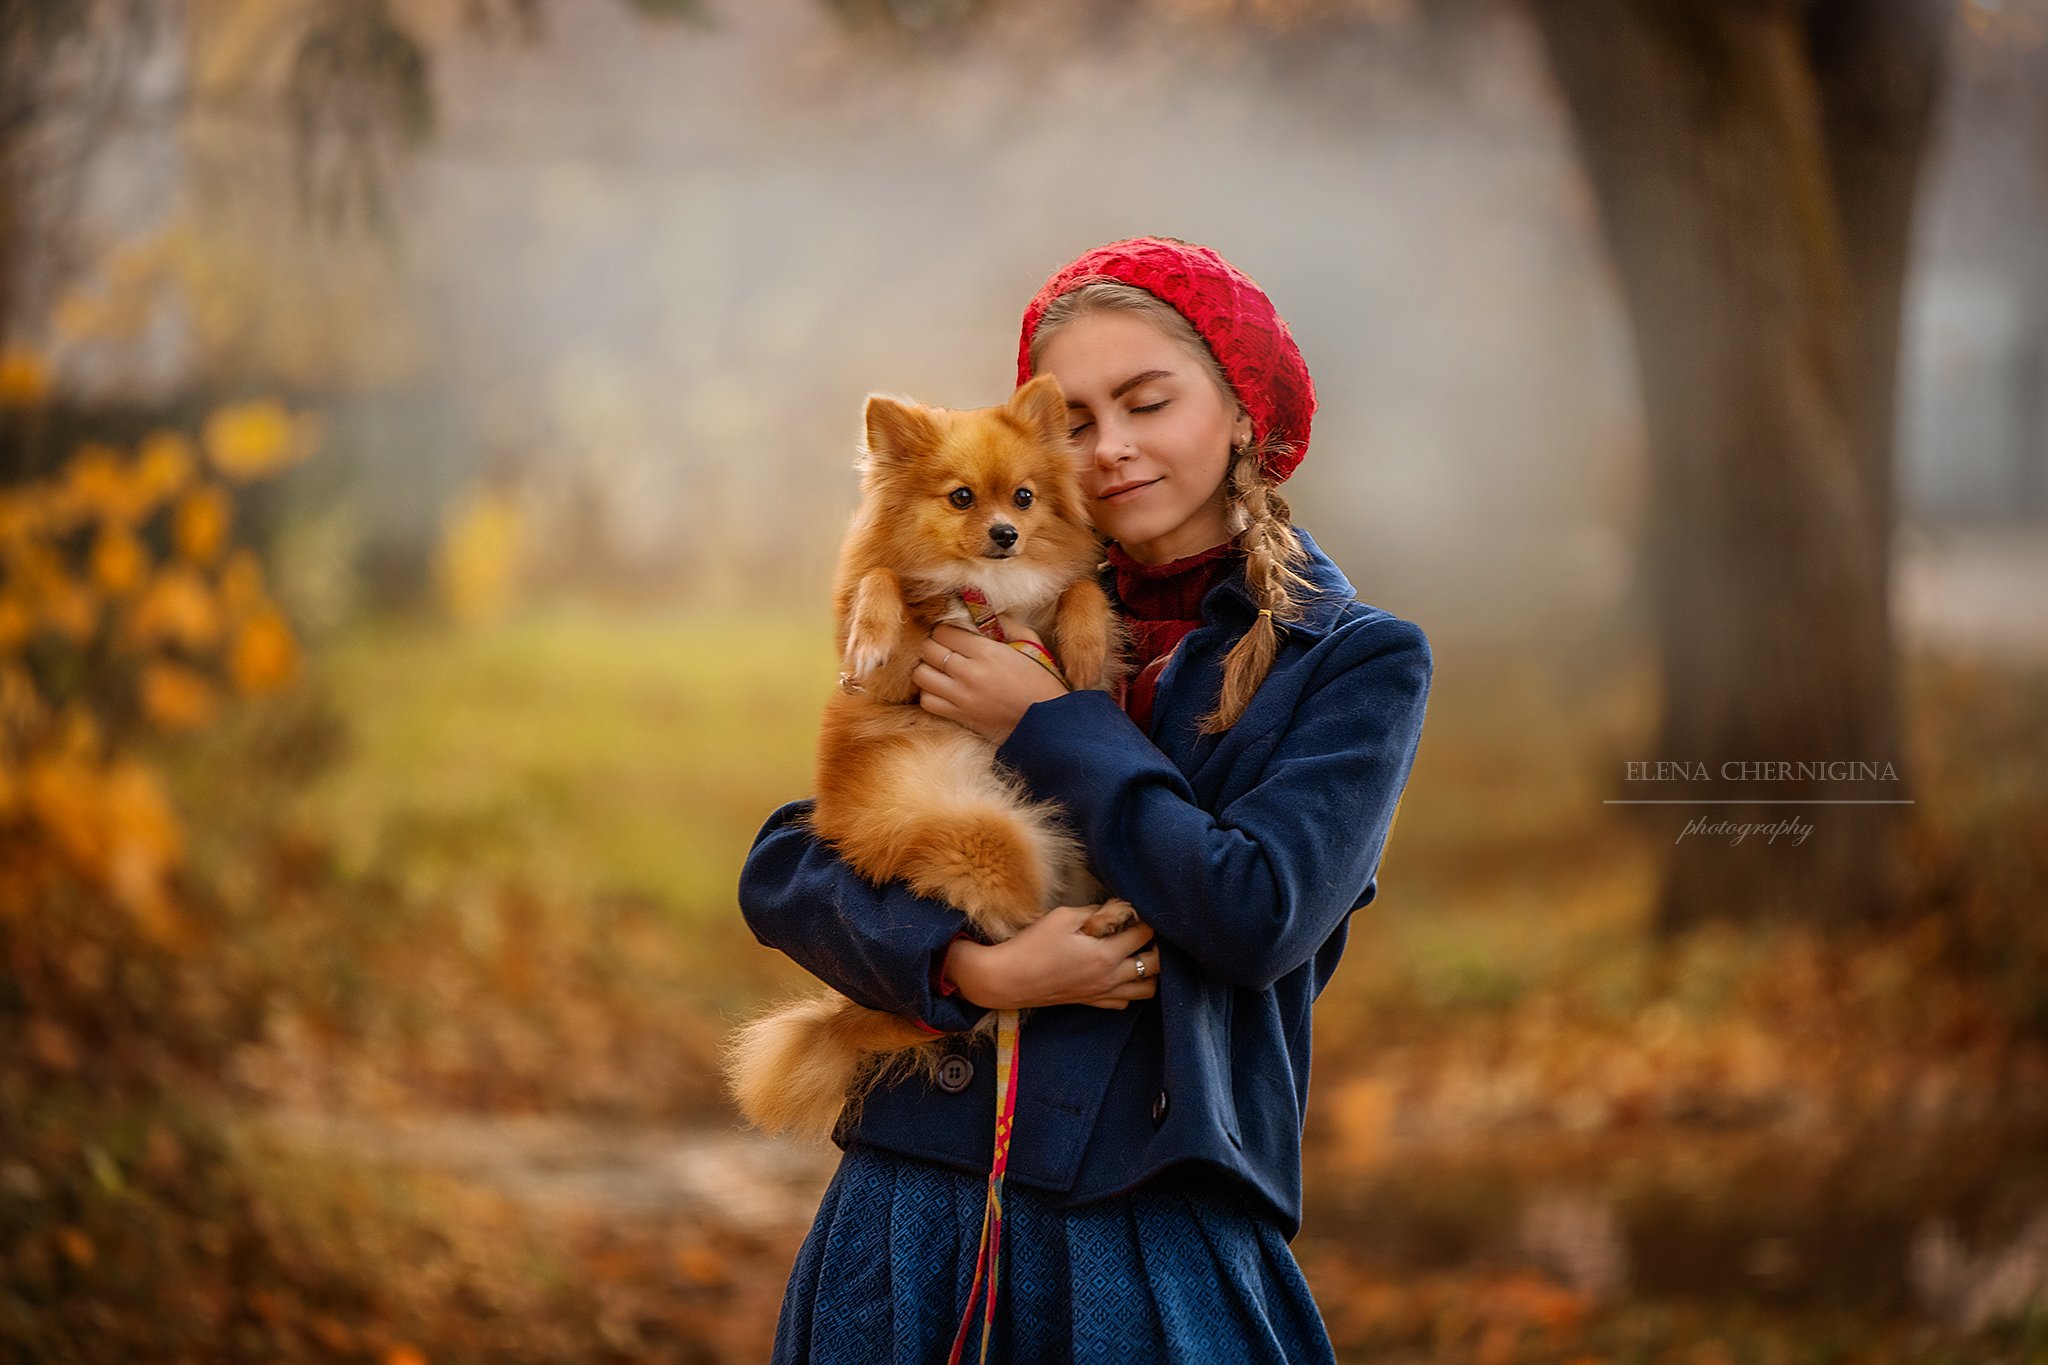 девушка, девочка с собакой, улица, город, фото девушки, городская съемка , Елена Чернигина